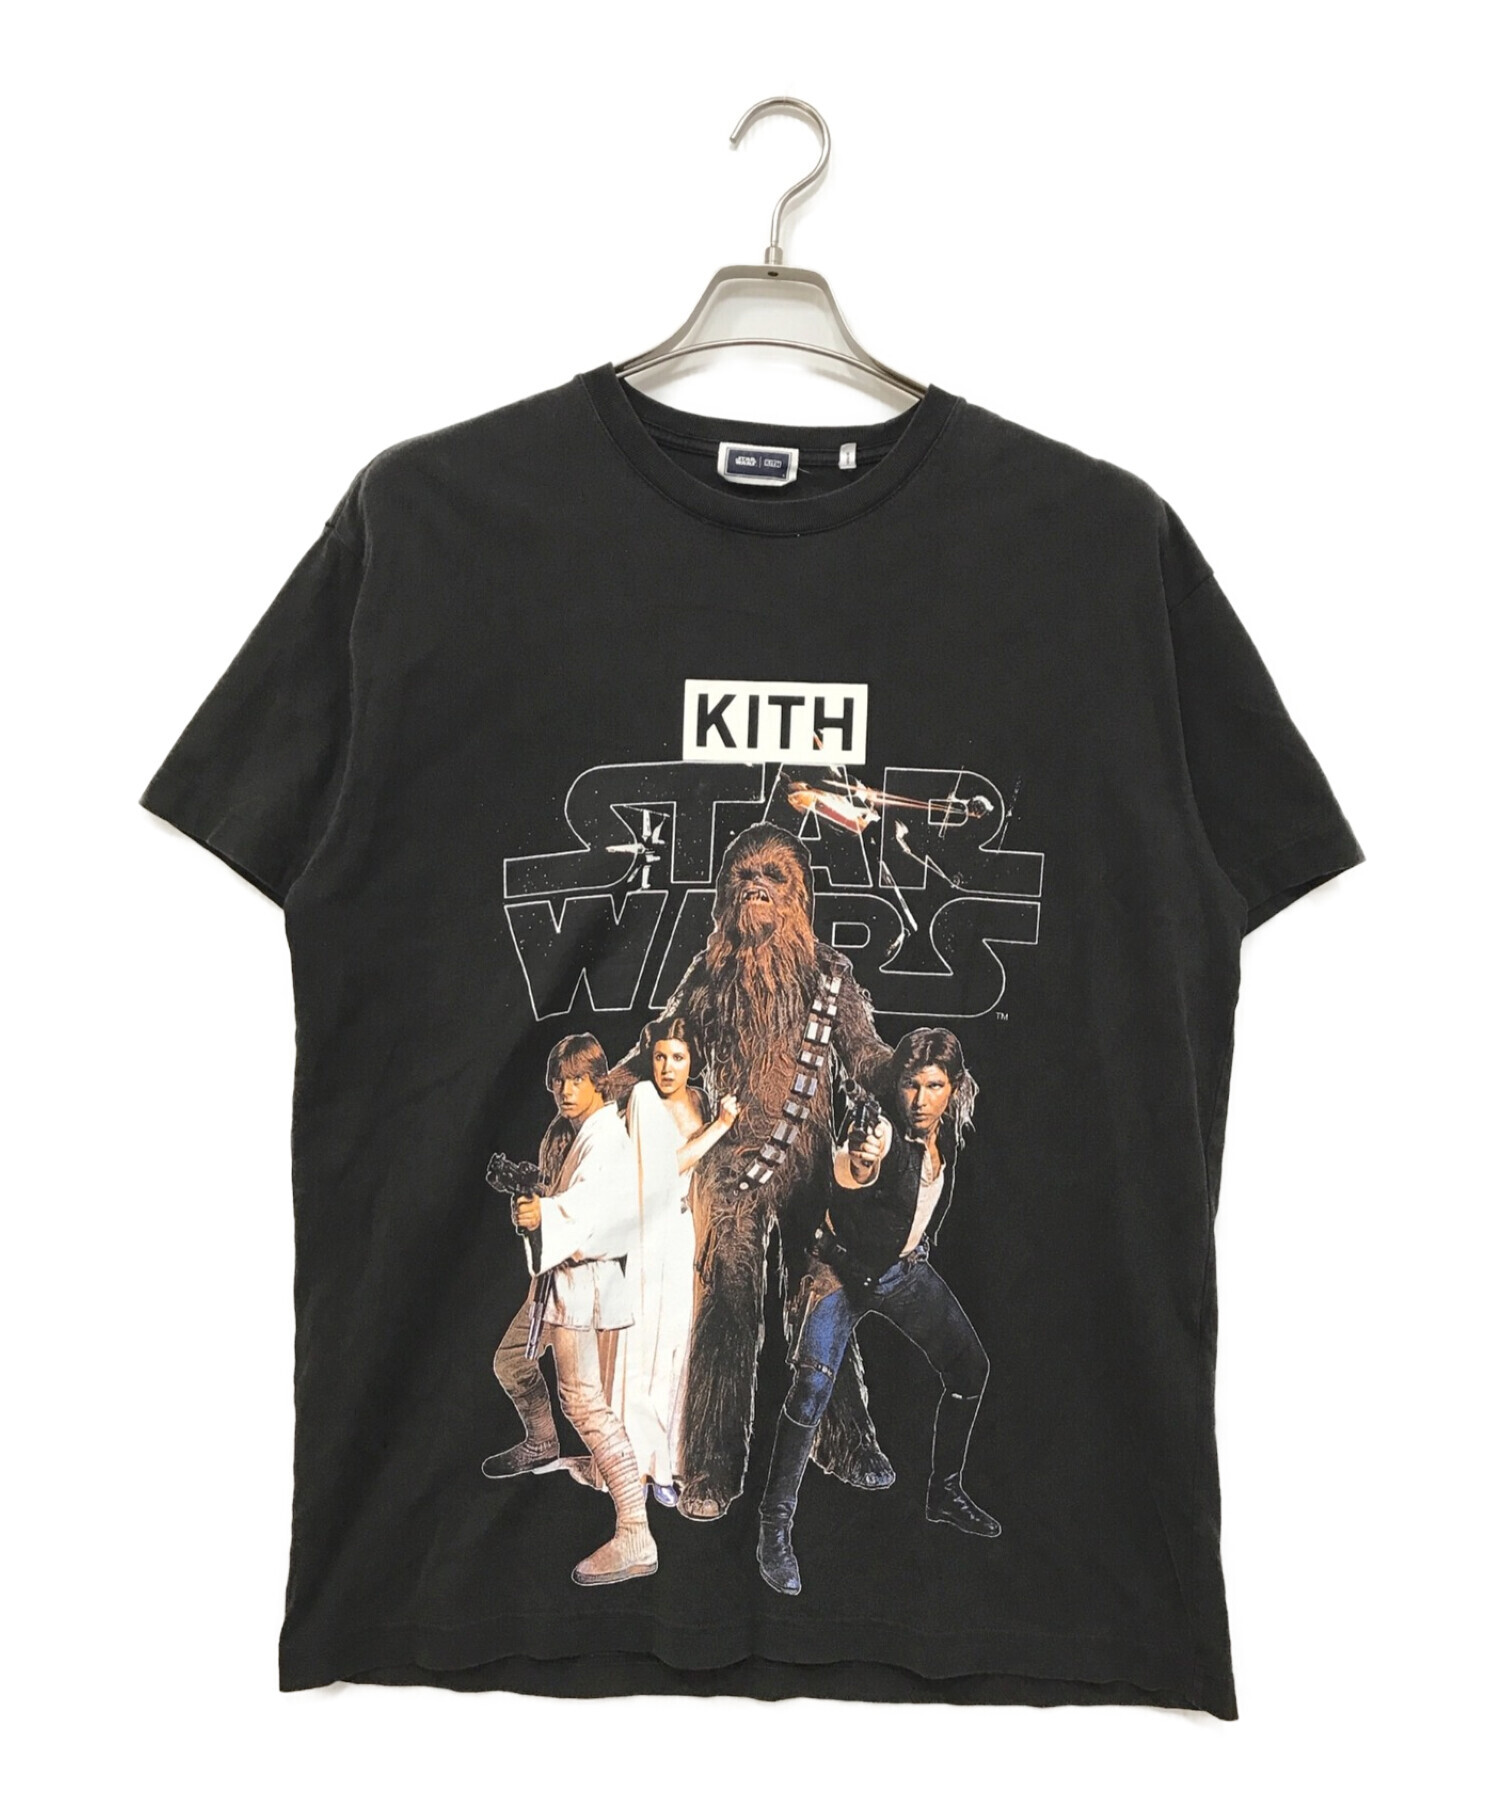 【新品】KITH キス スターウォーズ Tシャツ ブラック 送料無料